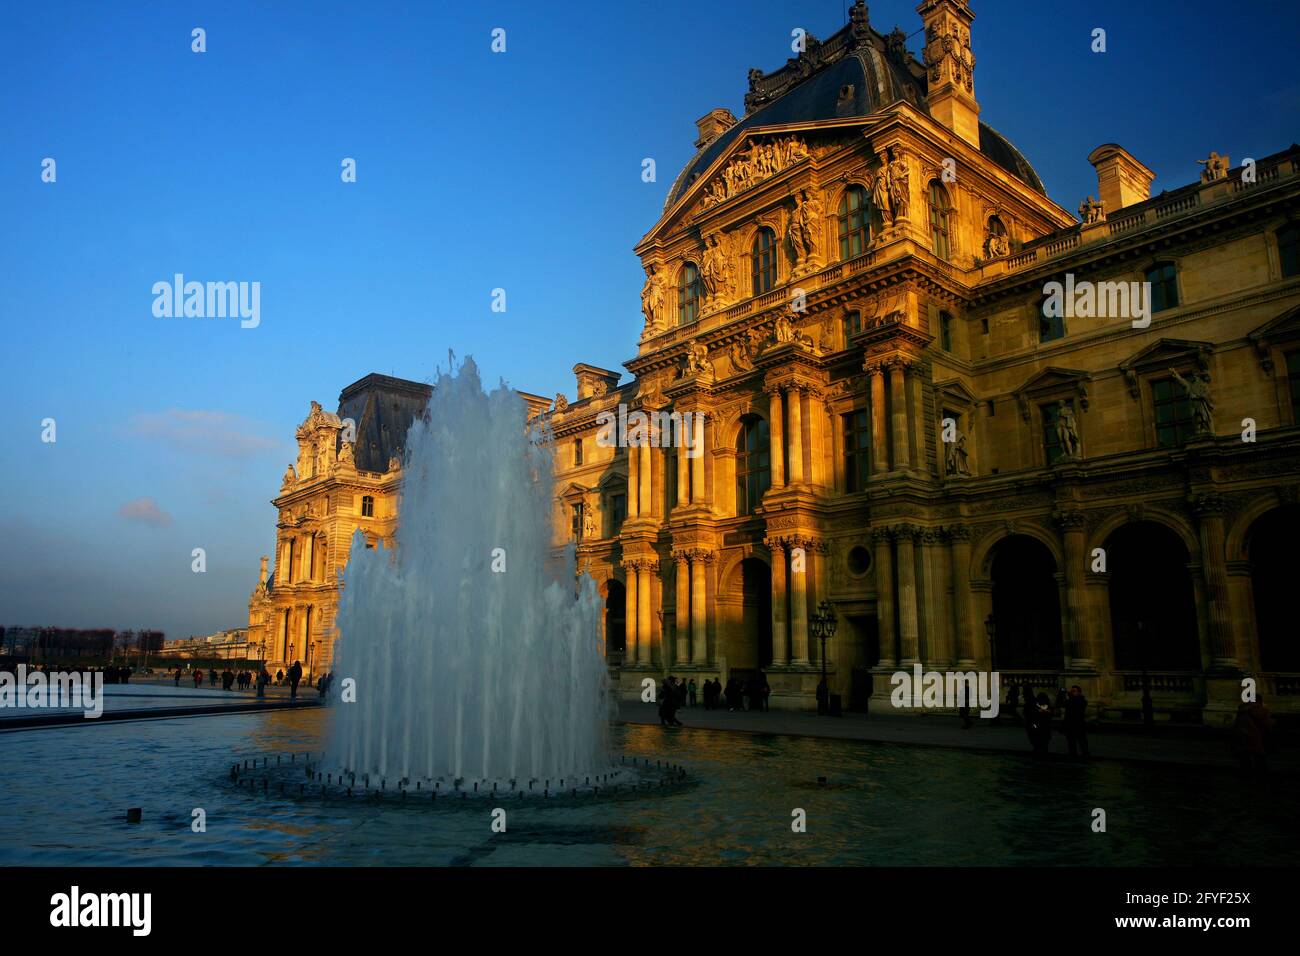 Der Louvre von der Sonne angestrahlt mit Springbrunnen in Paris in Frankreich Stock Photo